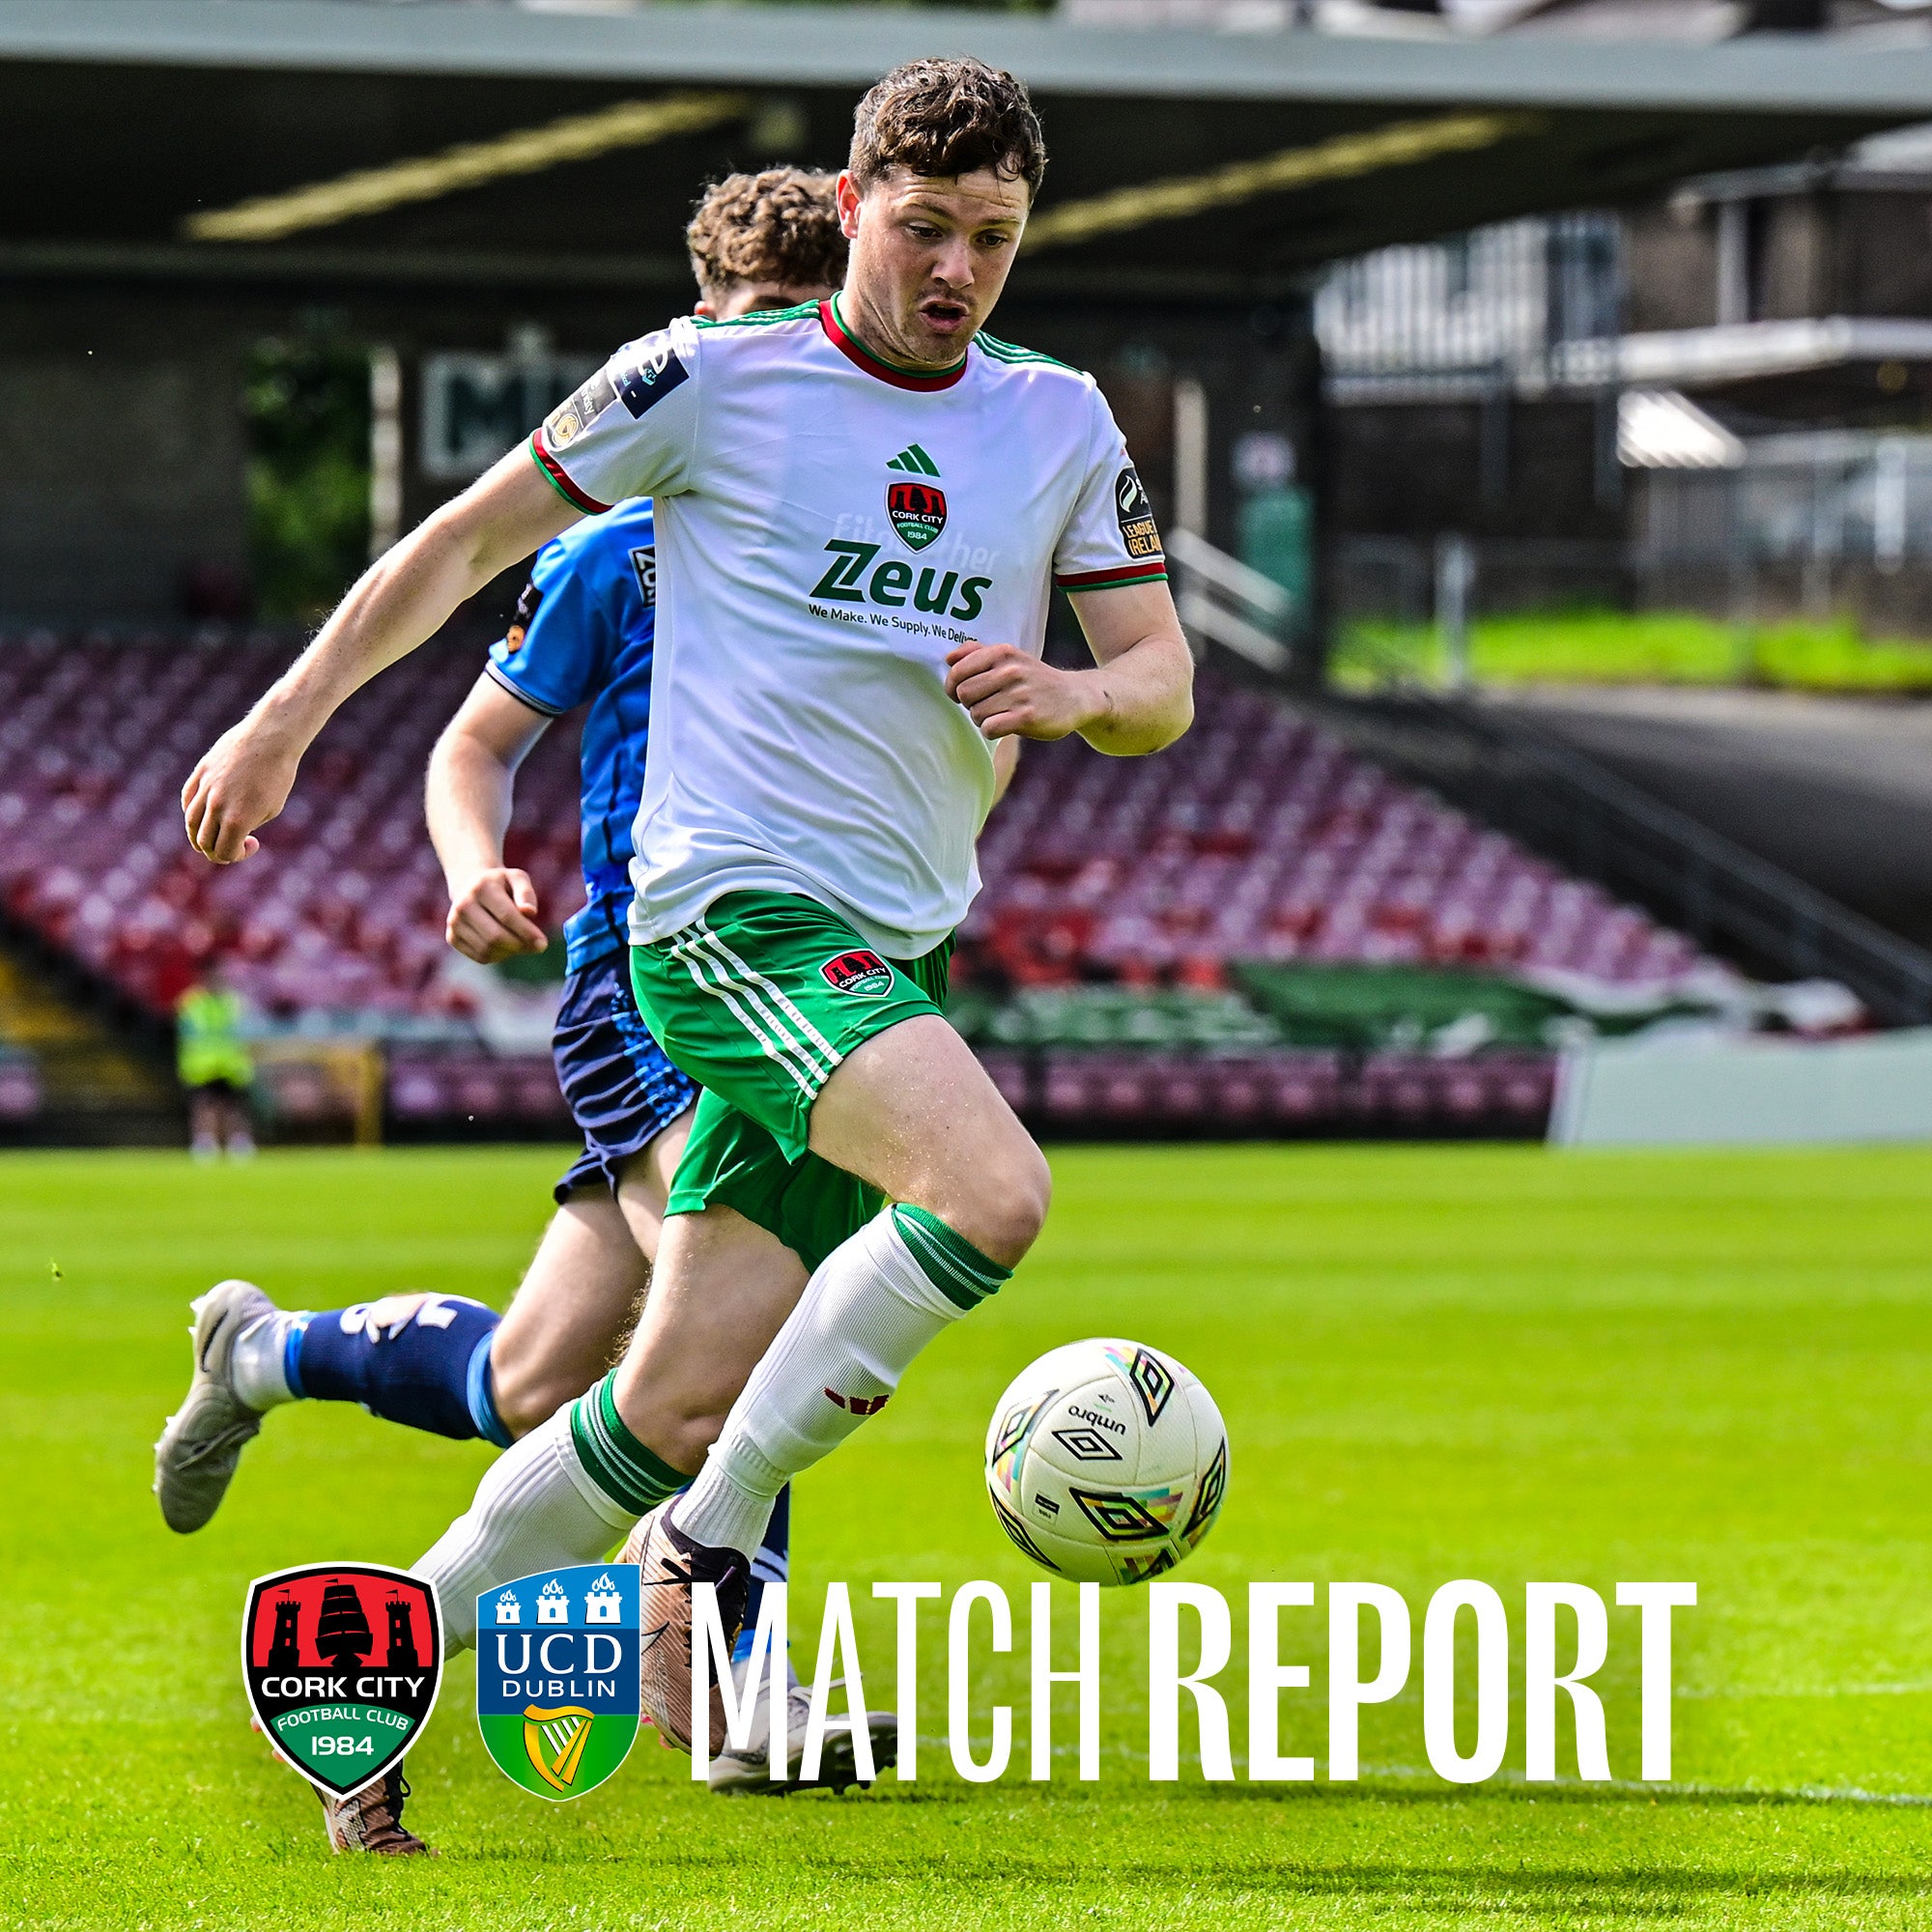 Match Report: Cork City 0-0 UCD